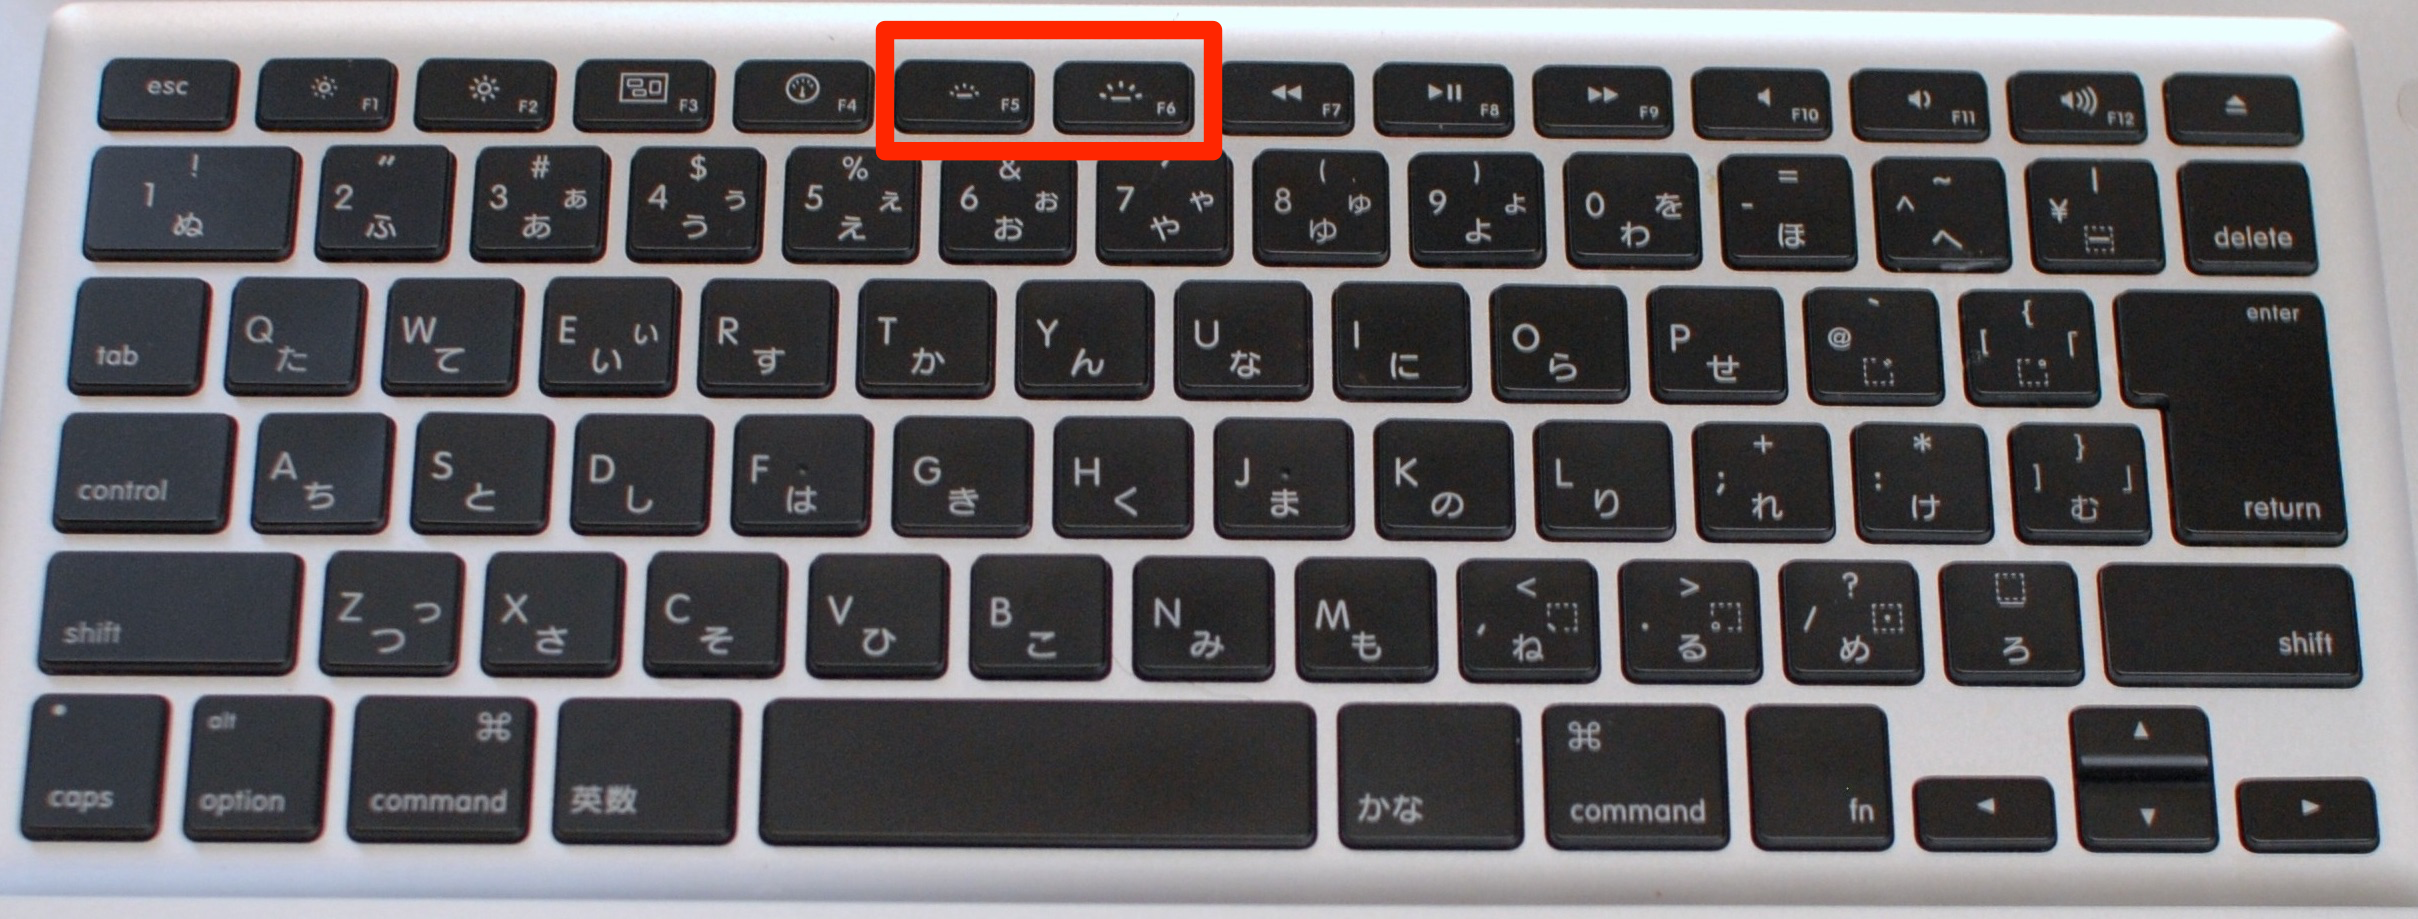 Macbookのキーボードのバックライトを消す方法 ゼロイチ